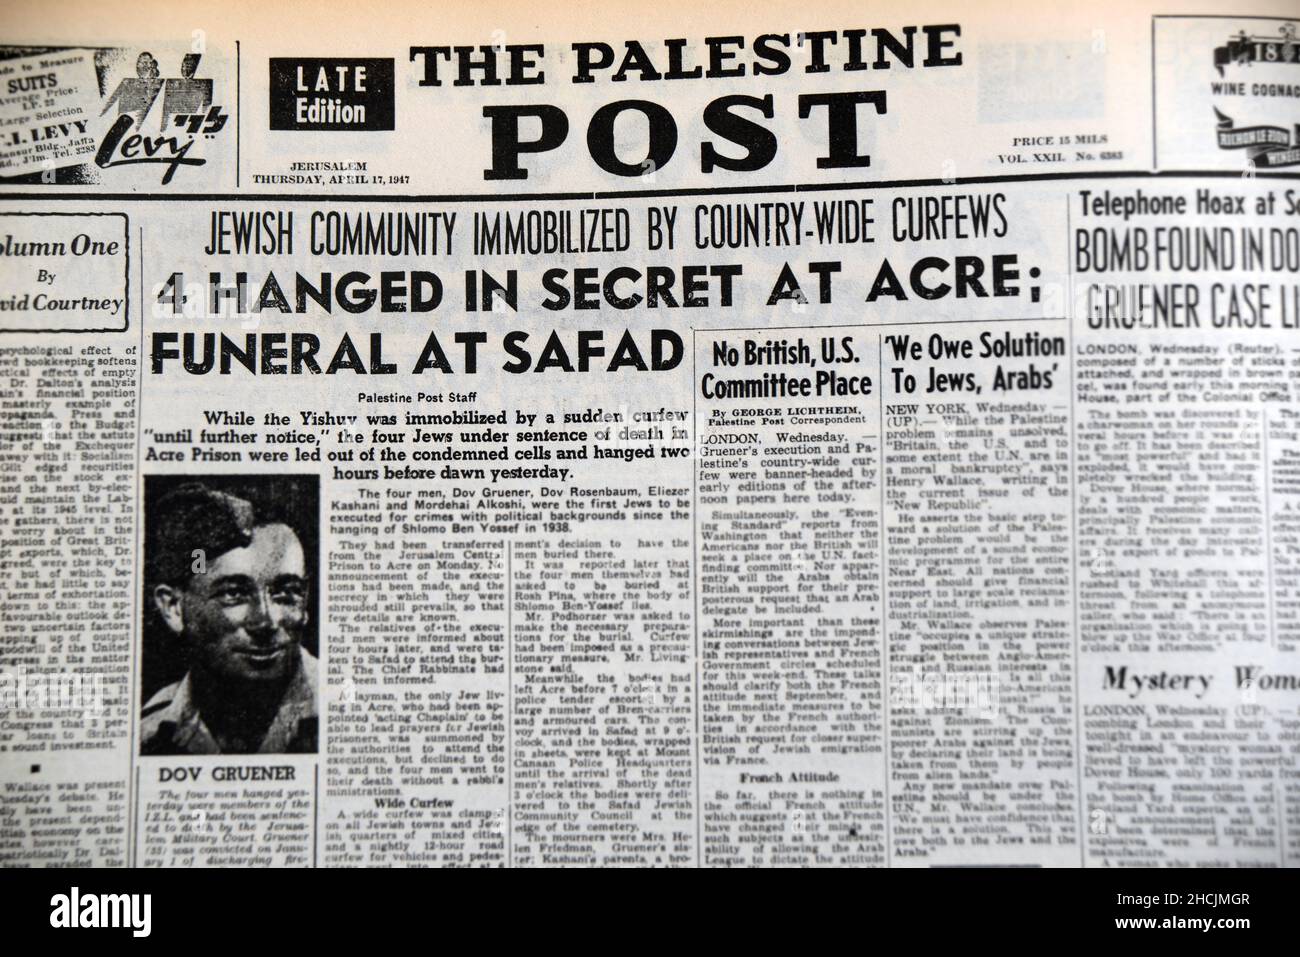 Schlagzeile der israelischen Zeitung mit einem historischen Ereignis - Ausgangssperren immobilisieren Juden, 1947 Stockfoto